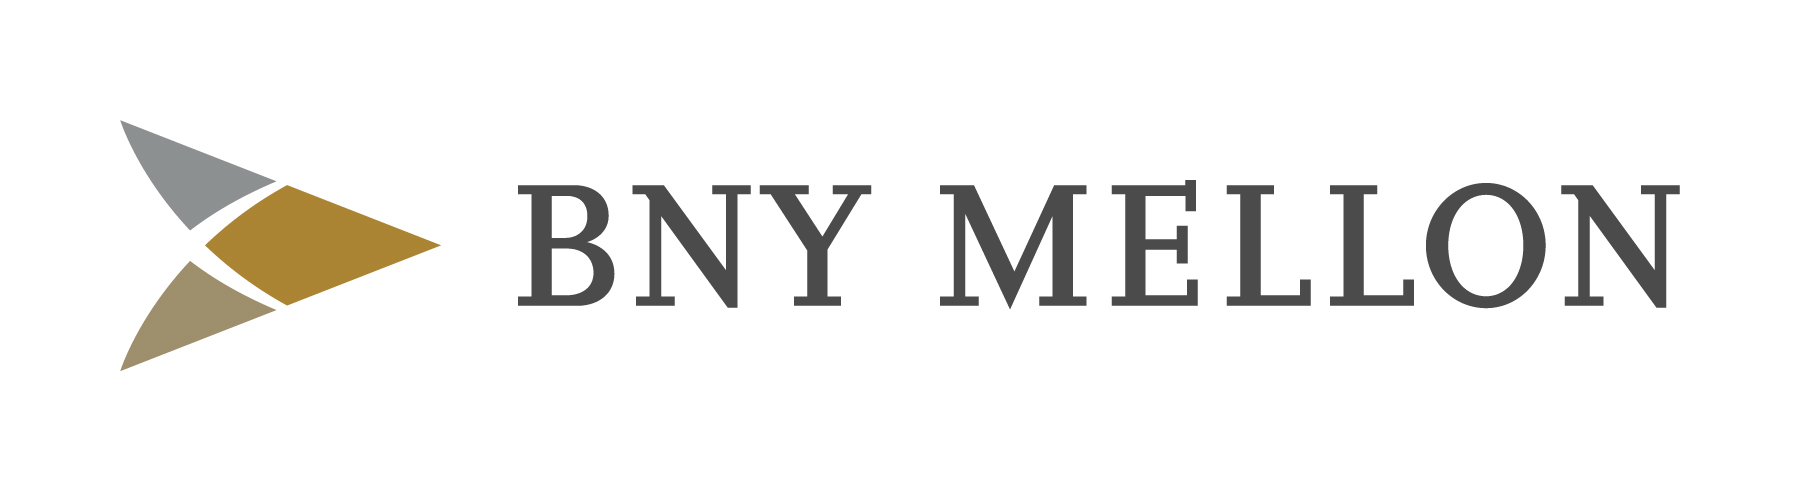 logo for The Bank of New York Mellon